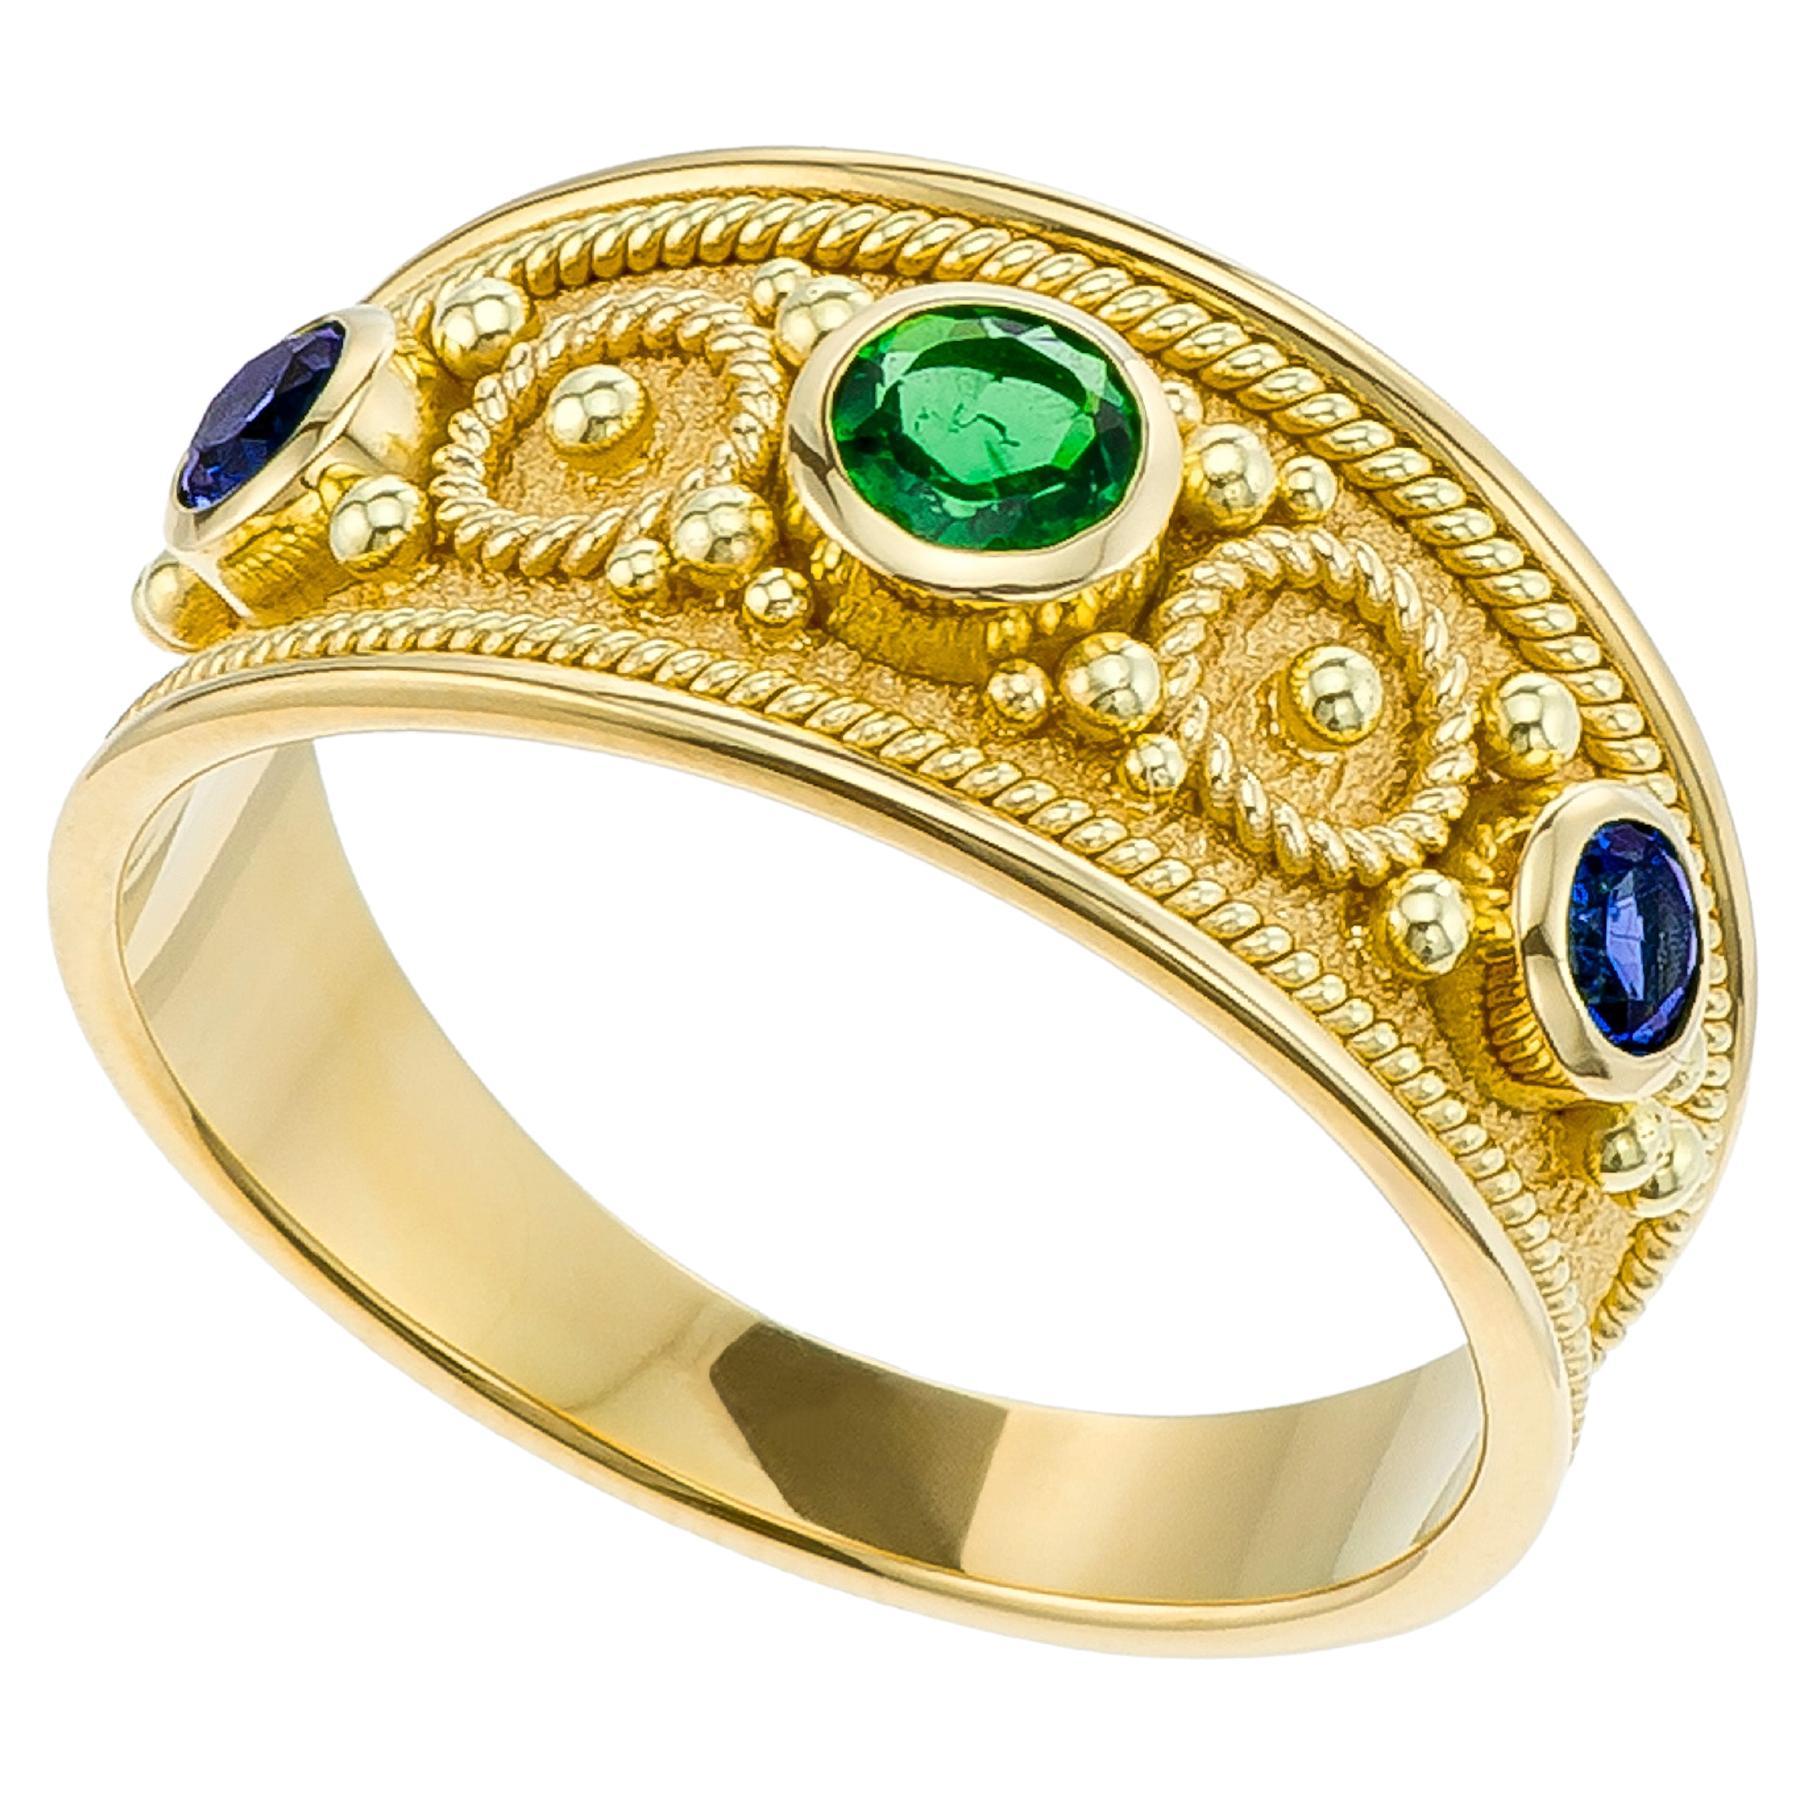 Byzantinischer Ring mit Smaragd und Saphiren